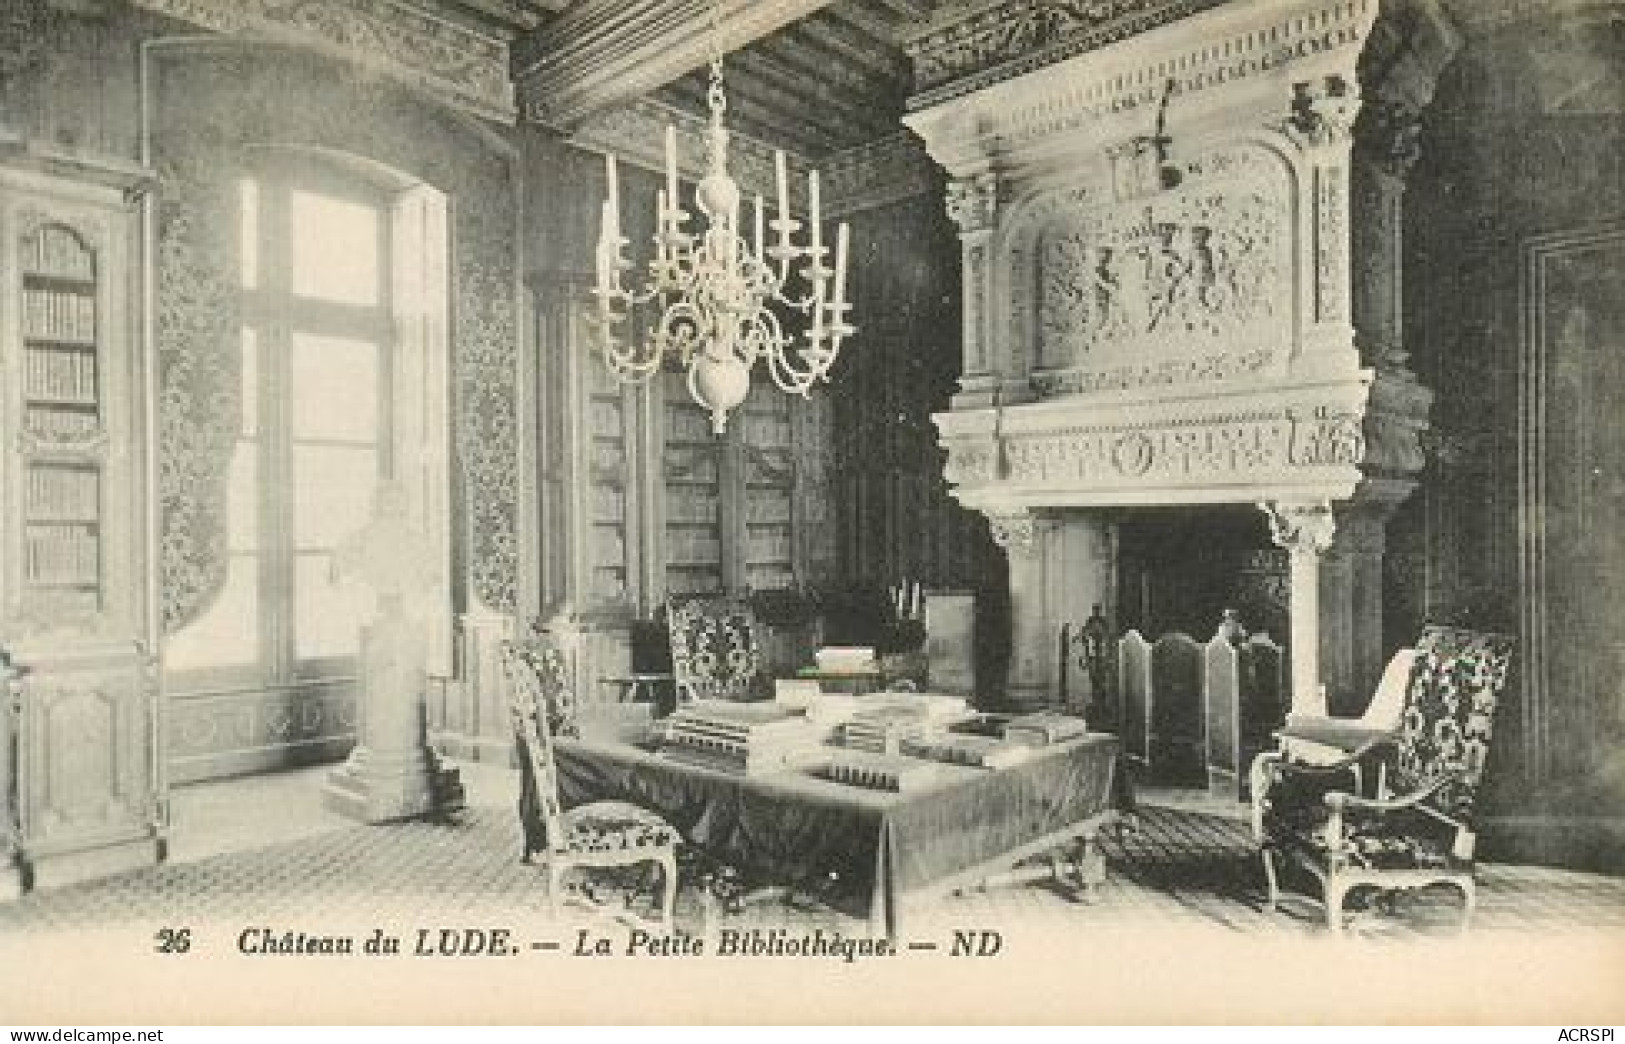 LOT de  27 cartes du chateau du lude  72800 Le Lude   1   (scan recto-verso)MA2128Bis